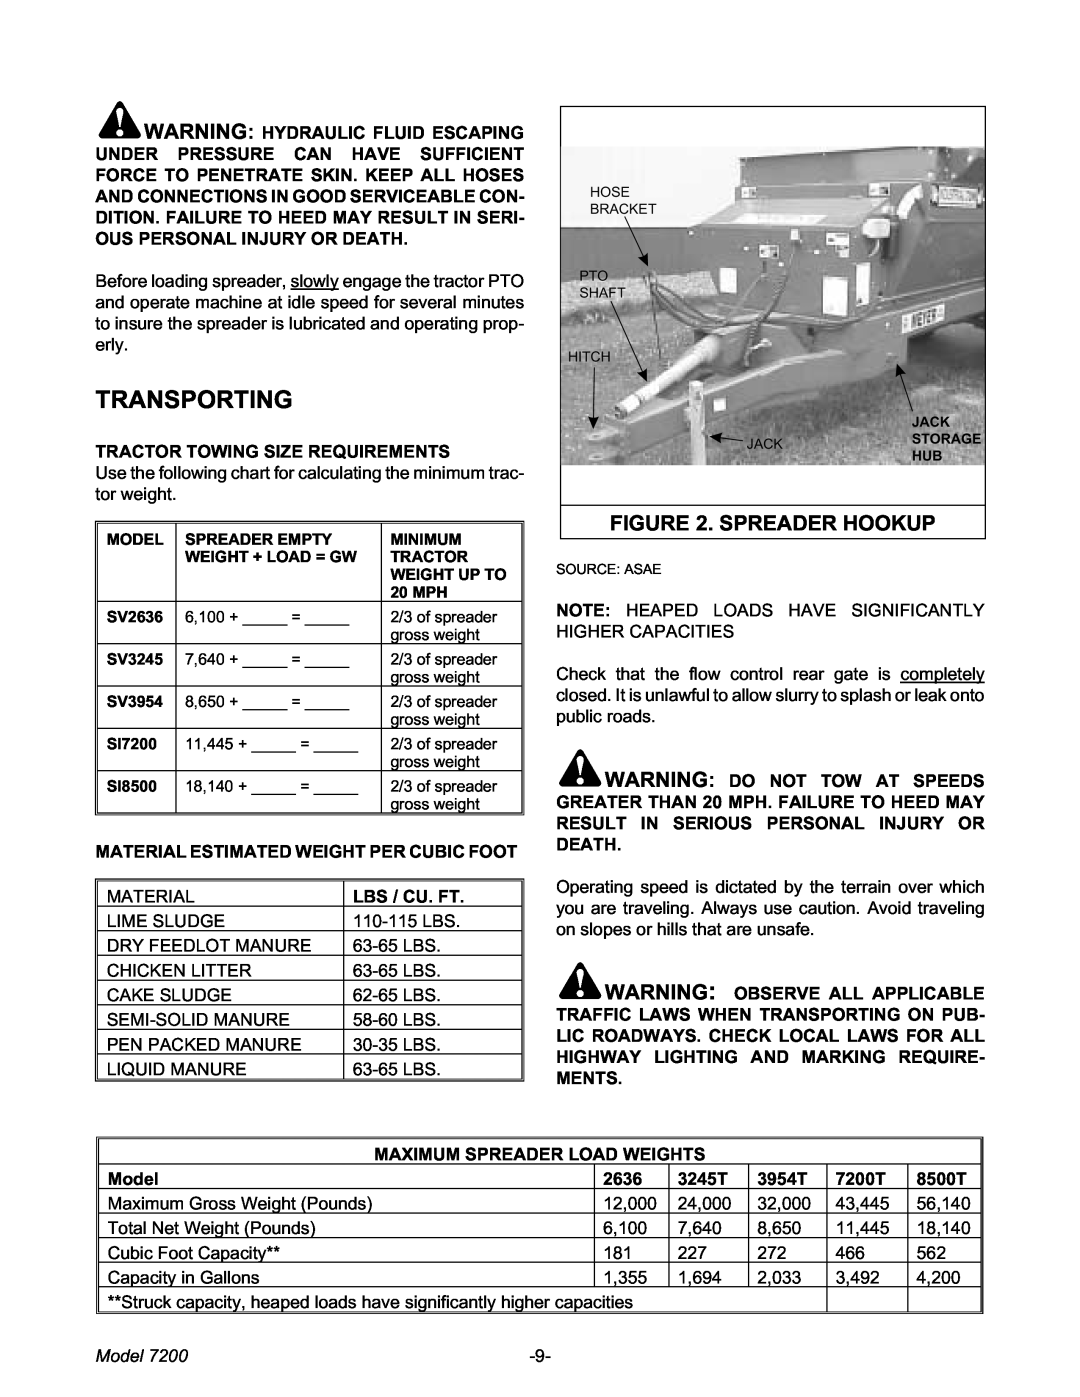 Meyer 7200 manual Transporting, Spreader Hookup, Model 